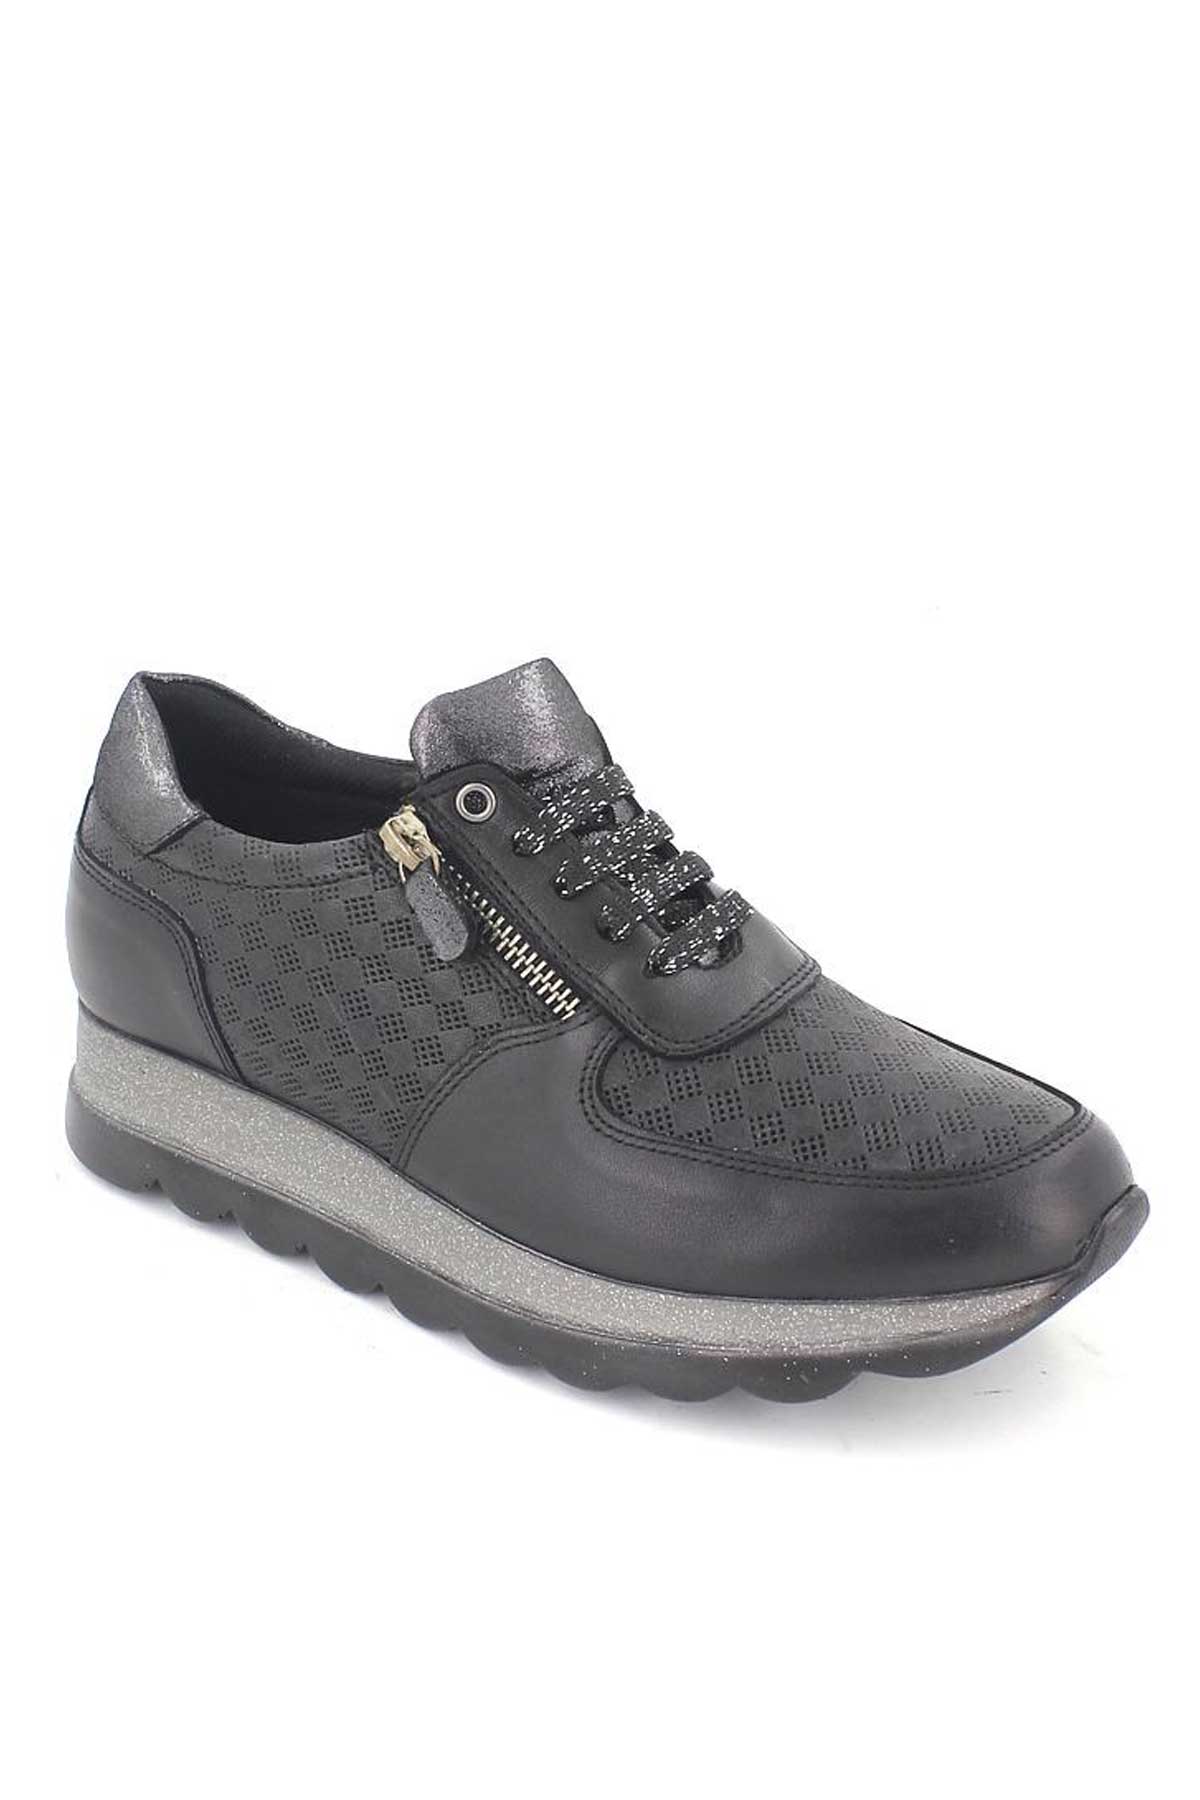 Kadın Deri Sneakers Ayakkabı Siyah 2076202Y - Thumbnail